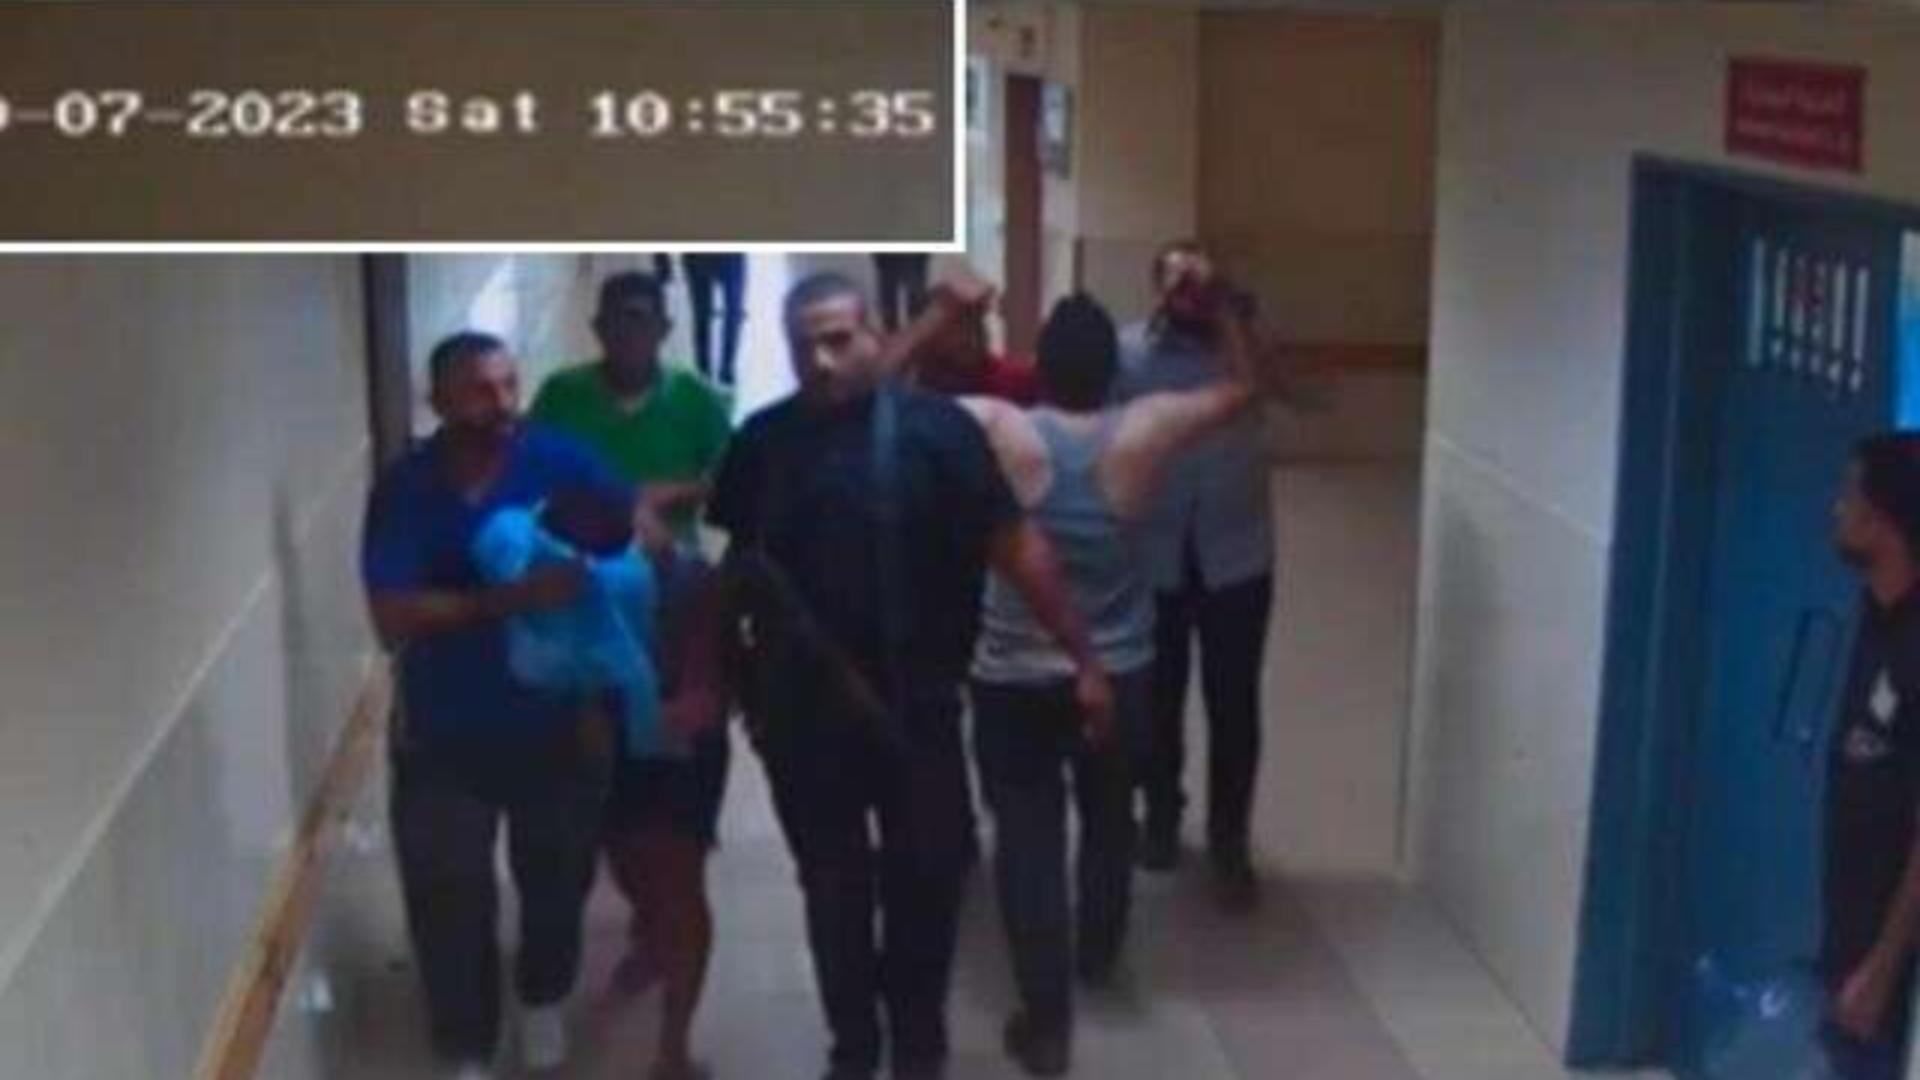 Război Israel-Hamas. Armata israeliană a publicat imagini video în care afirmă că se văd ostatici duşi în spitalul Al Shifa